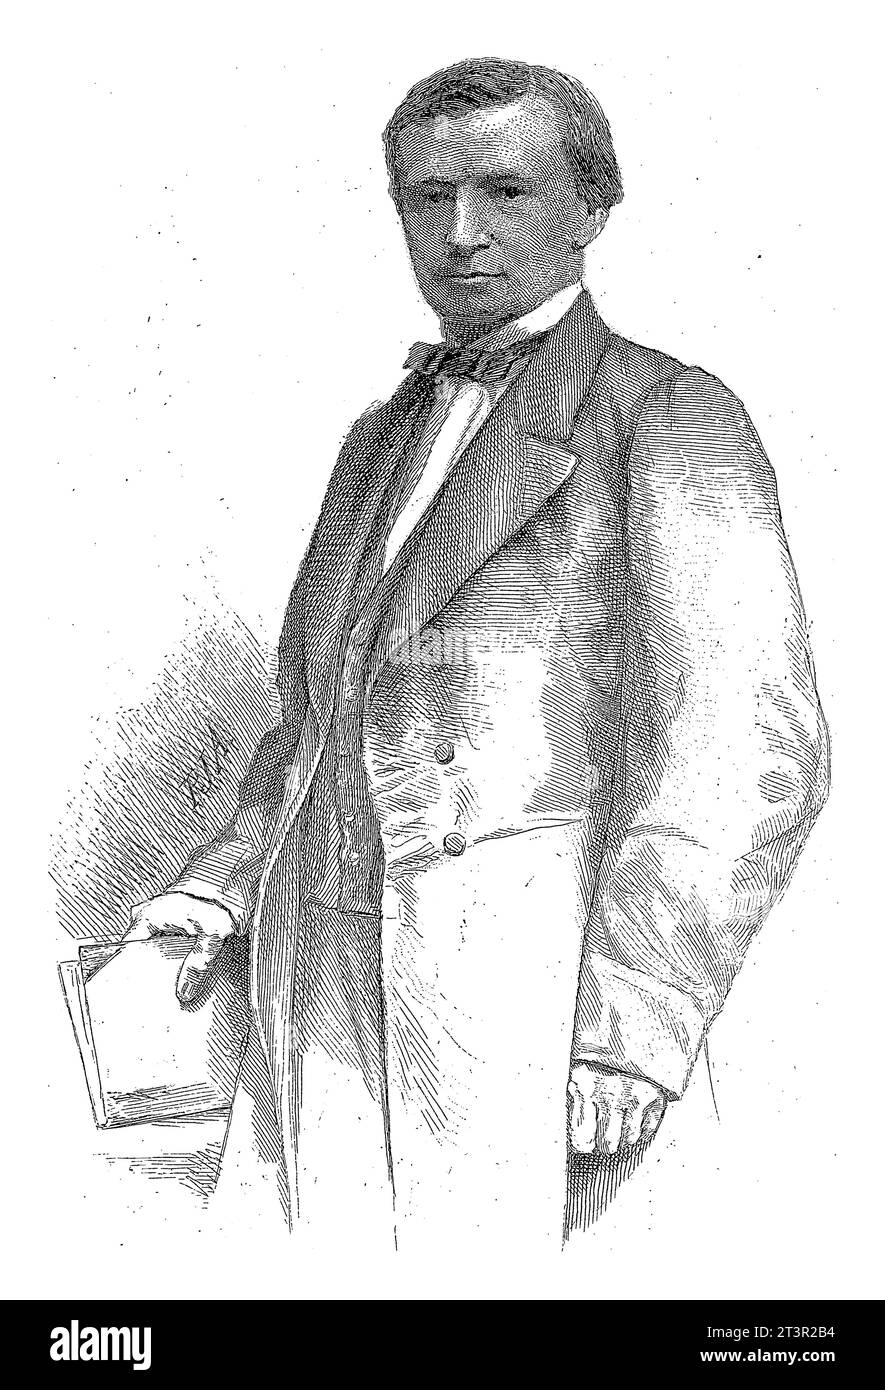 Porträt von Conrad Busken Huet, Petrus Johannes Arendzen, 1856 - 1886 Porträt von Conrad Busken Huet in Halbperson, mit Buch in der Hand. Stockfoto